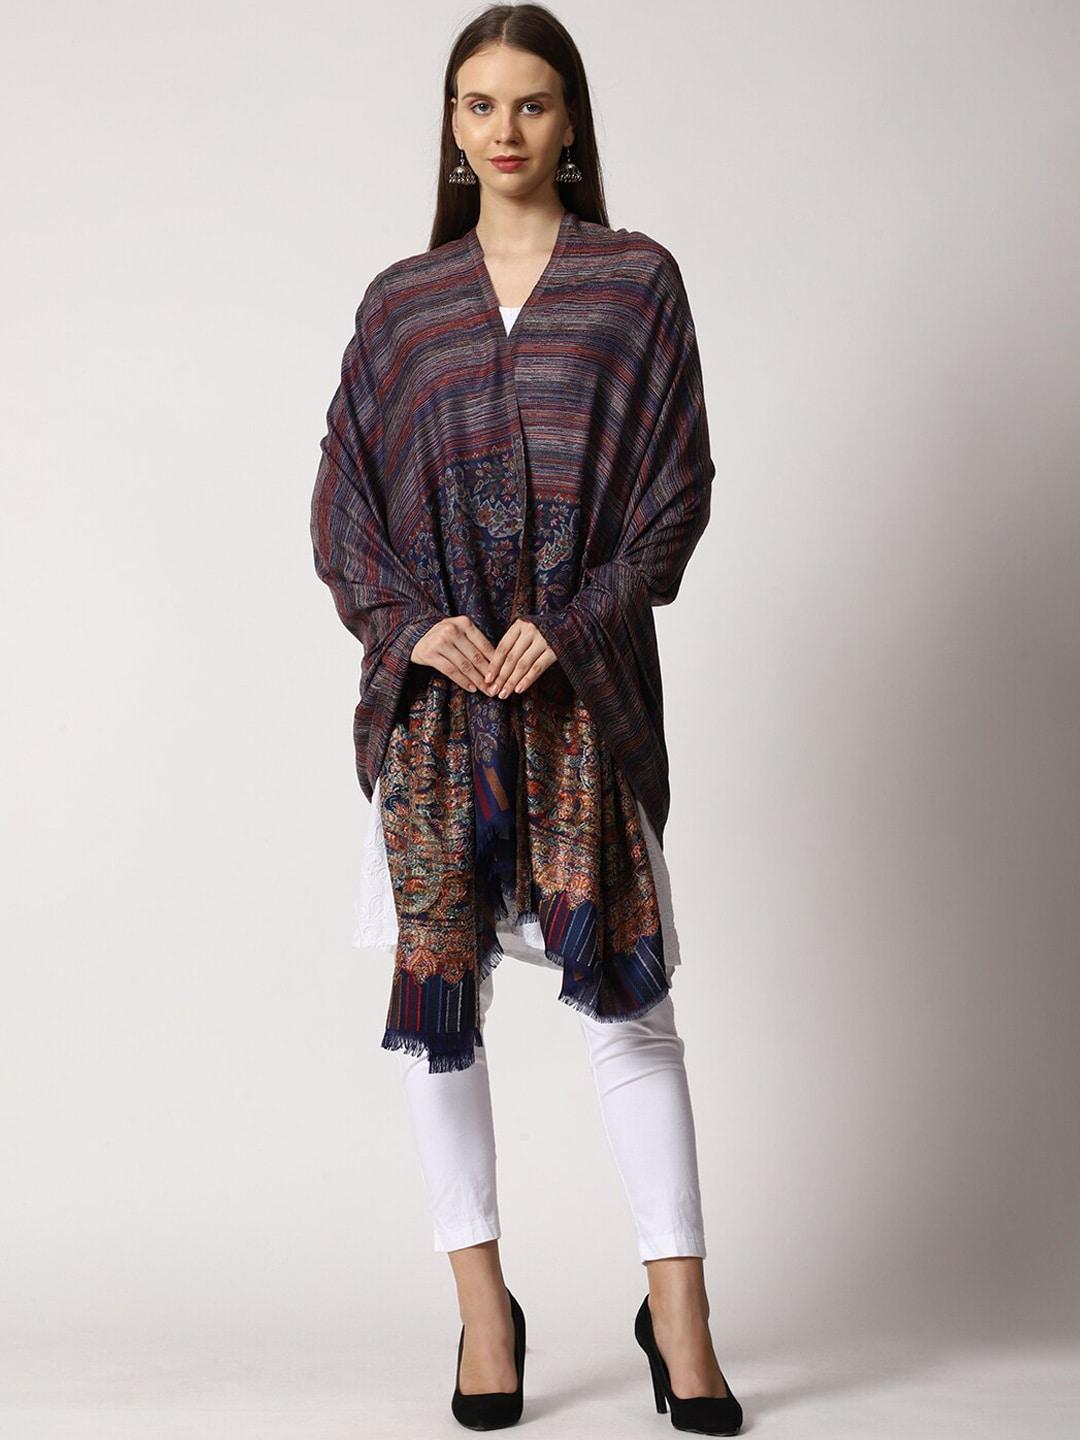 swi stylish women woven design shawl